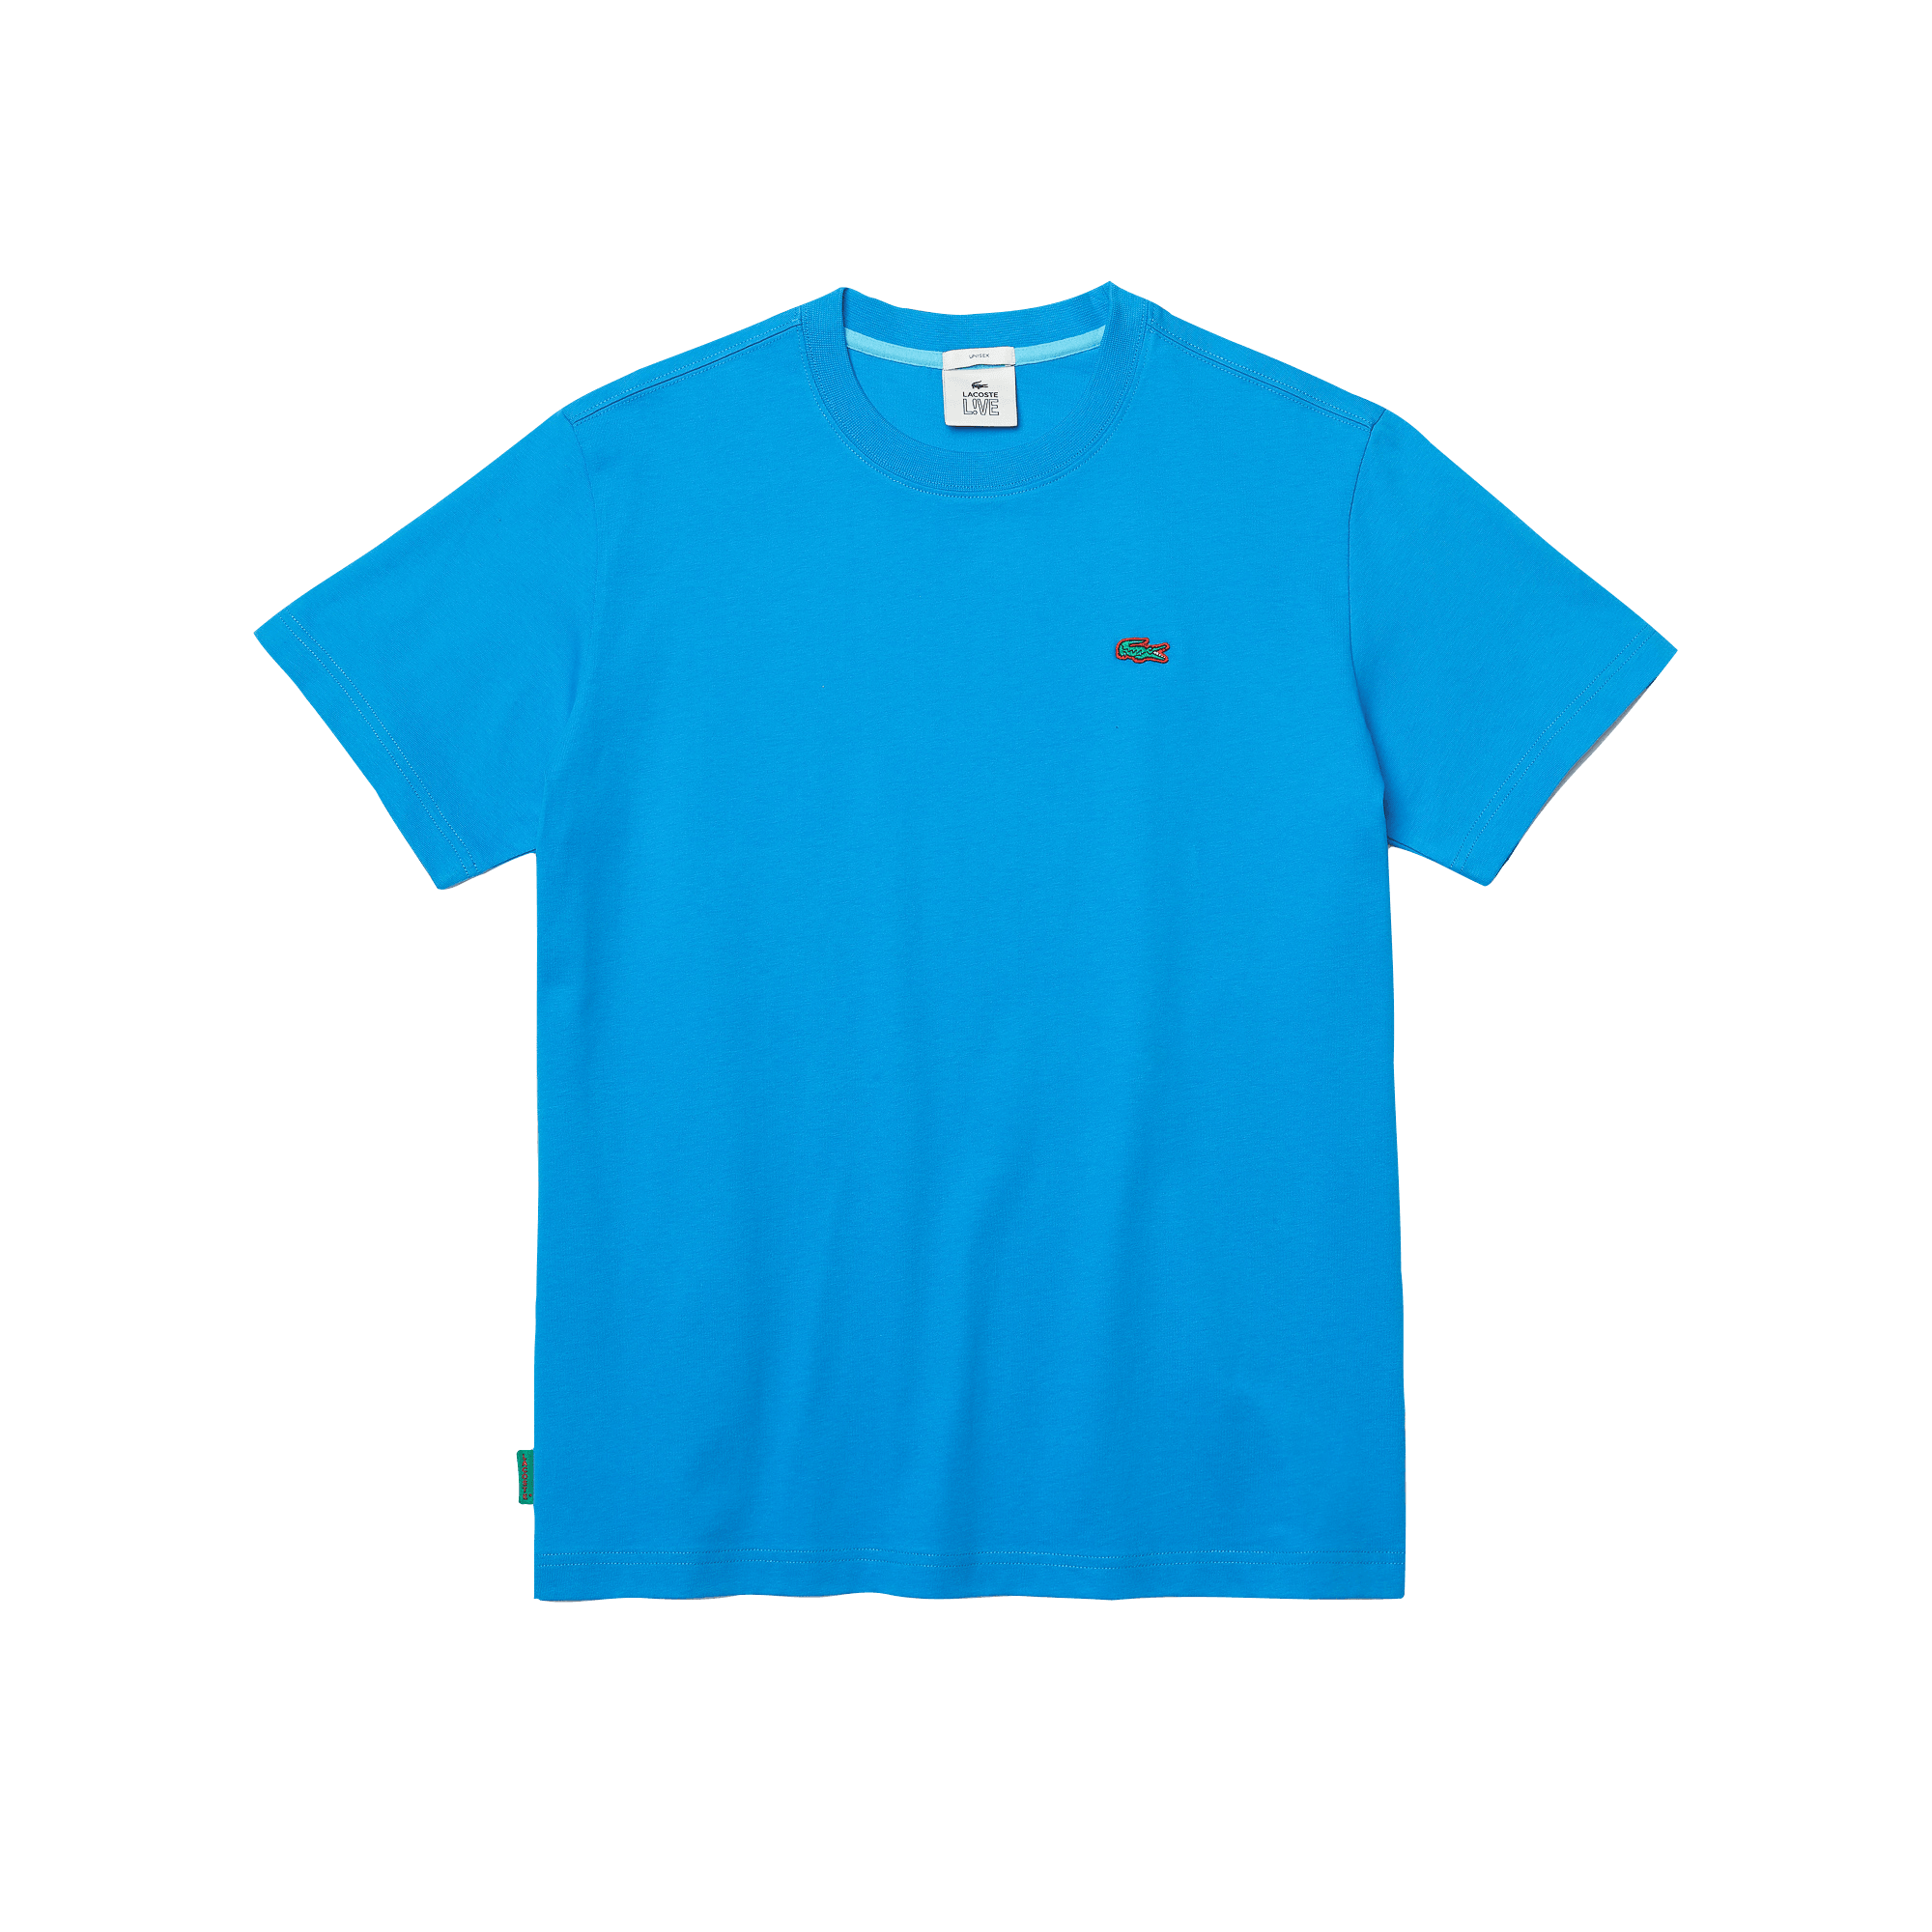 Camiseta unisex Lacoste L!VE en algodón - ECRU